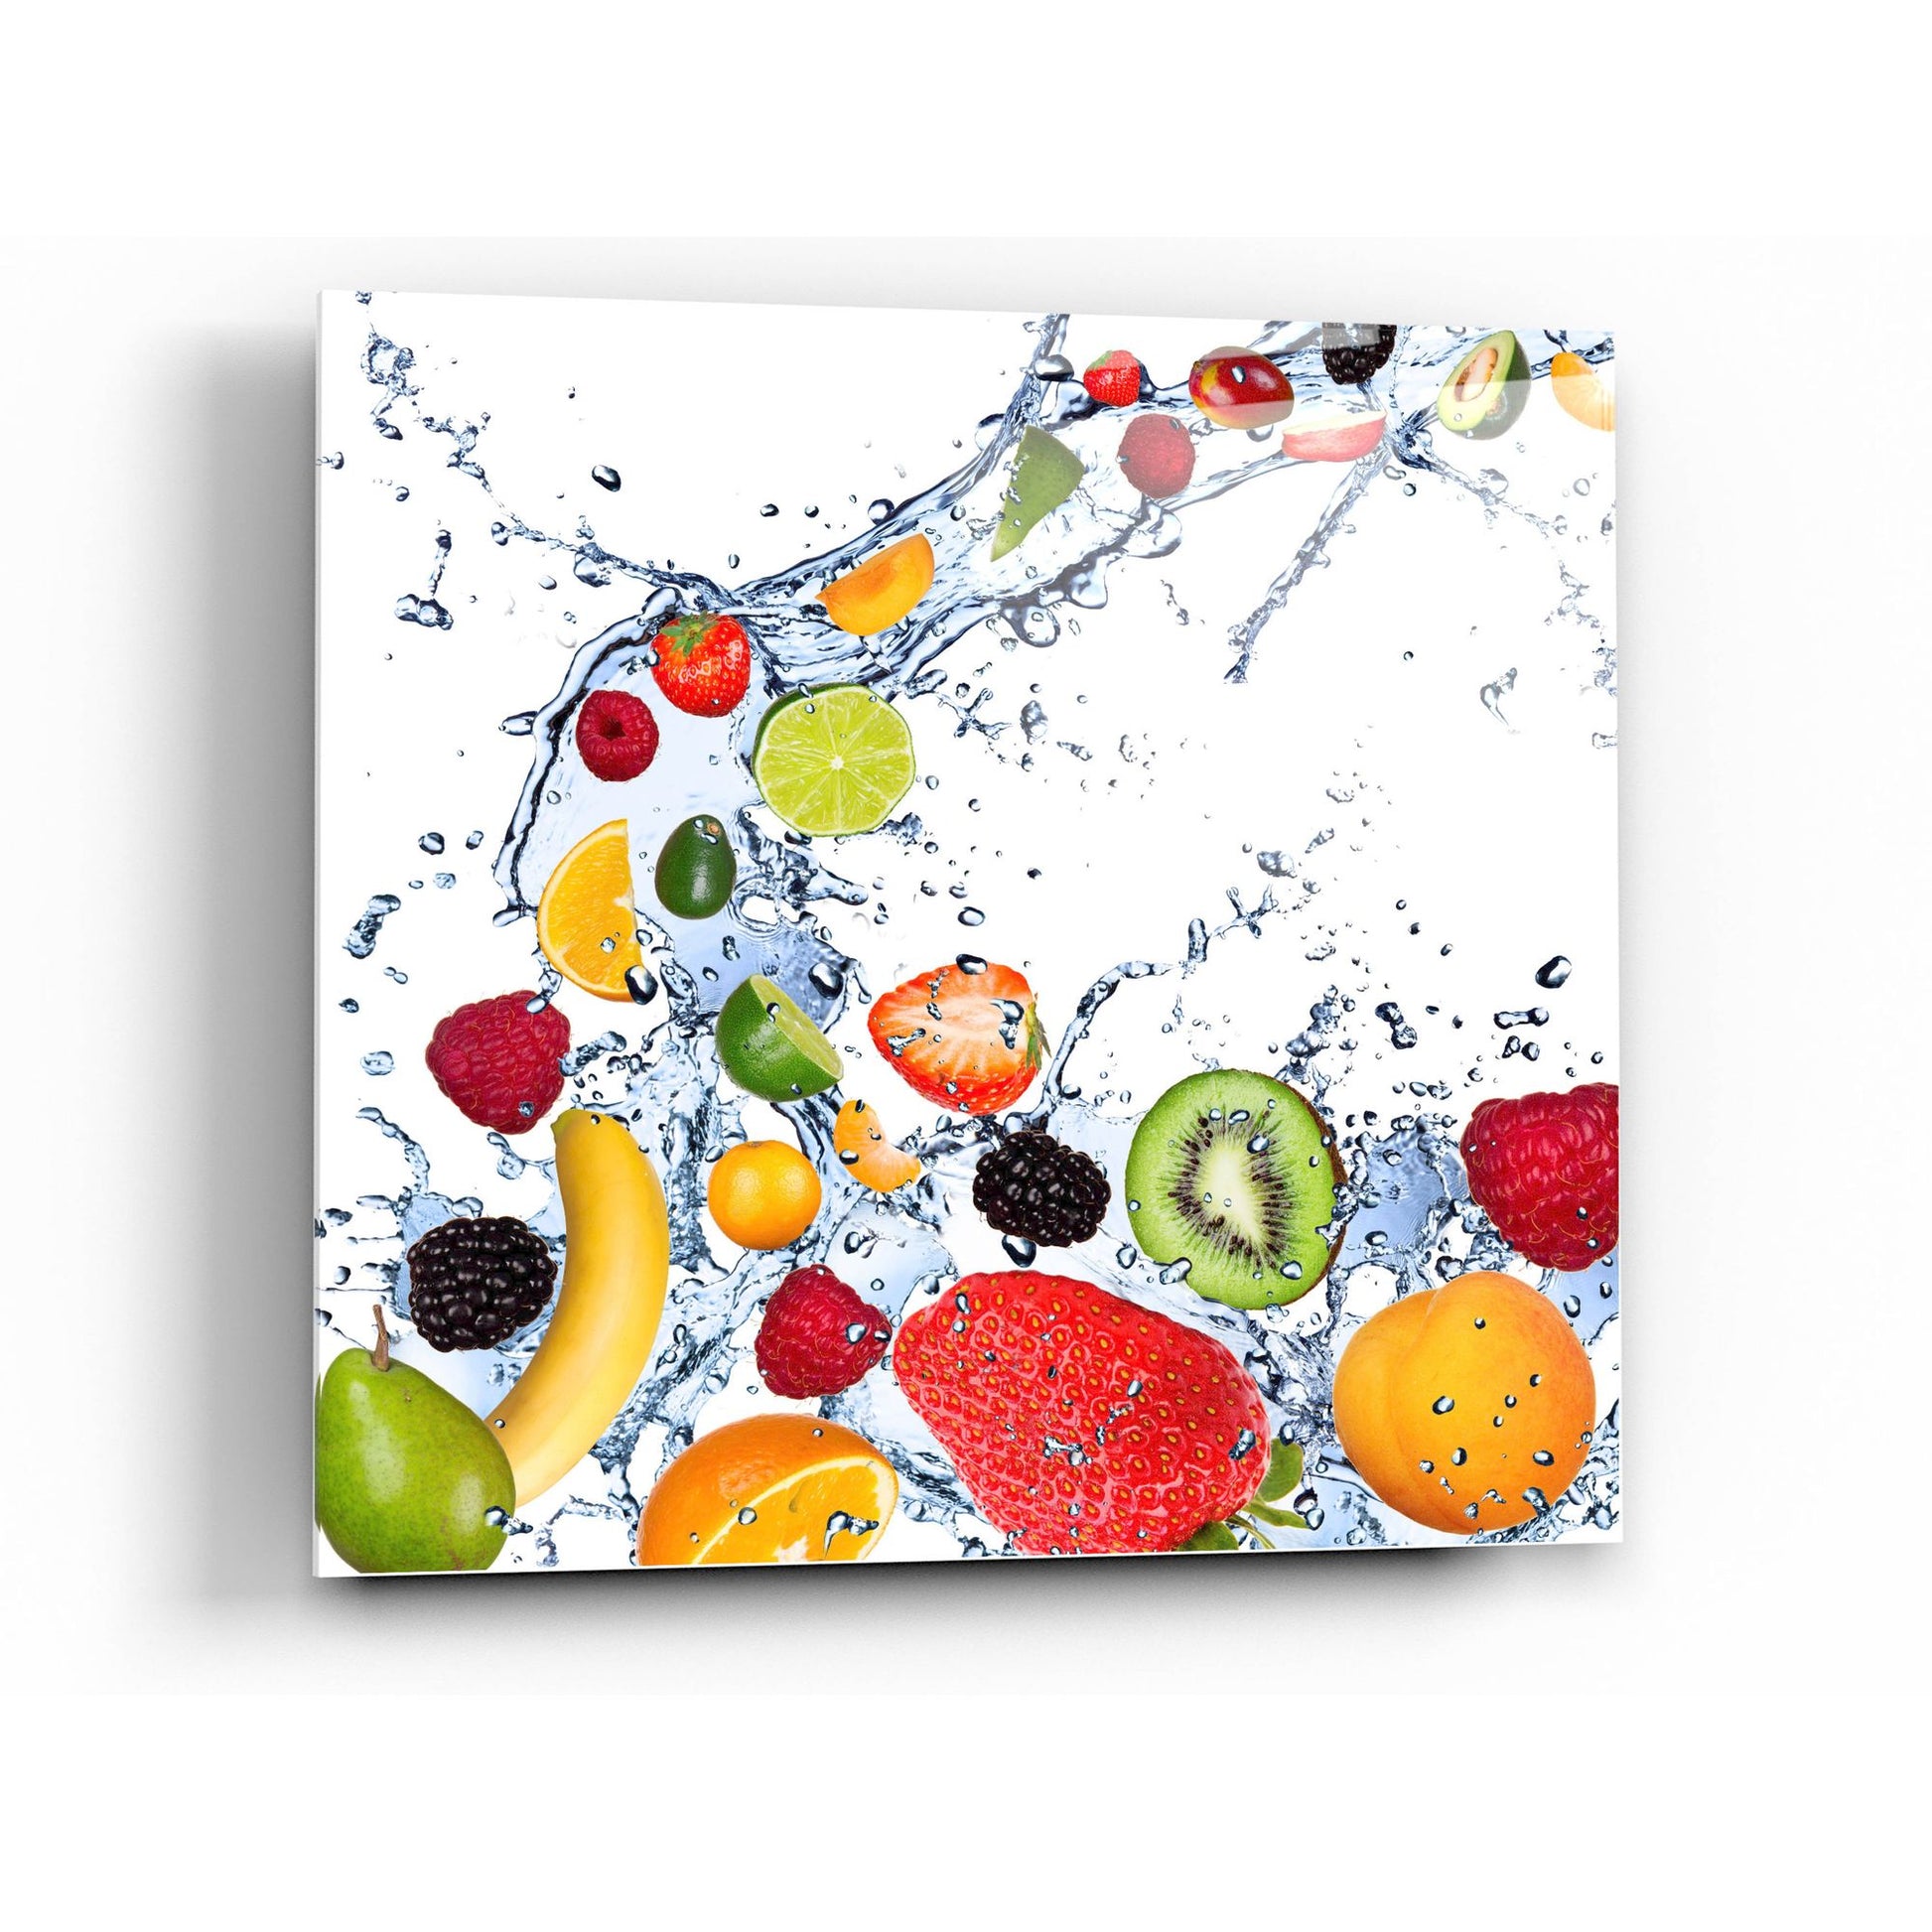 Epic Art "Fruit Splash II" Acrylic Glass Wall Art,36x36